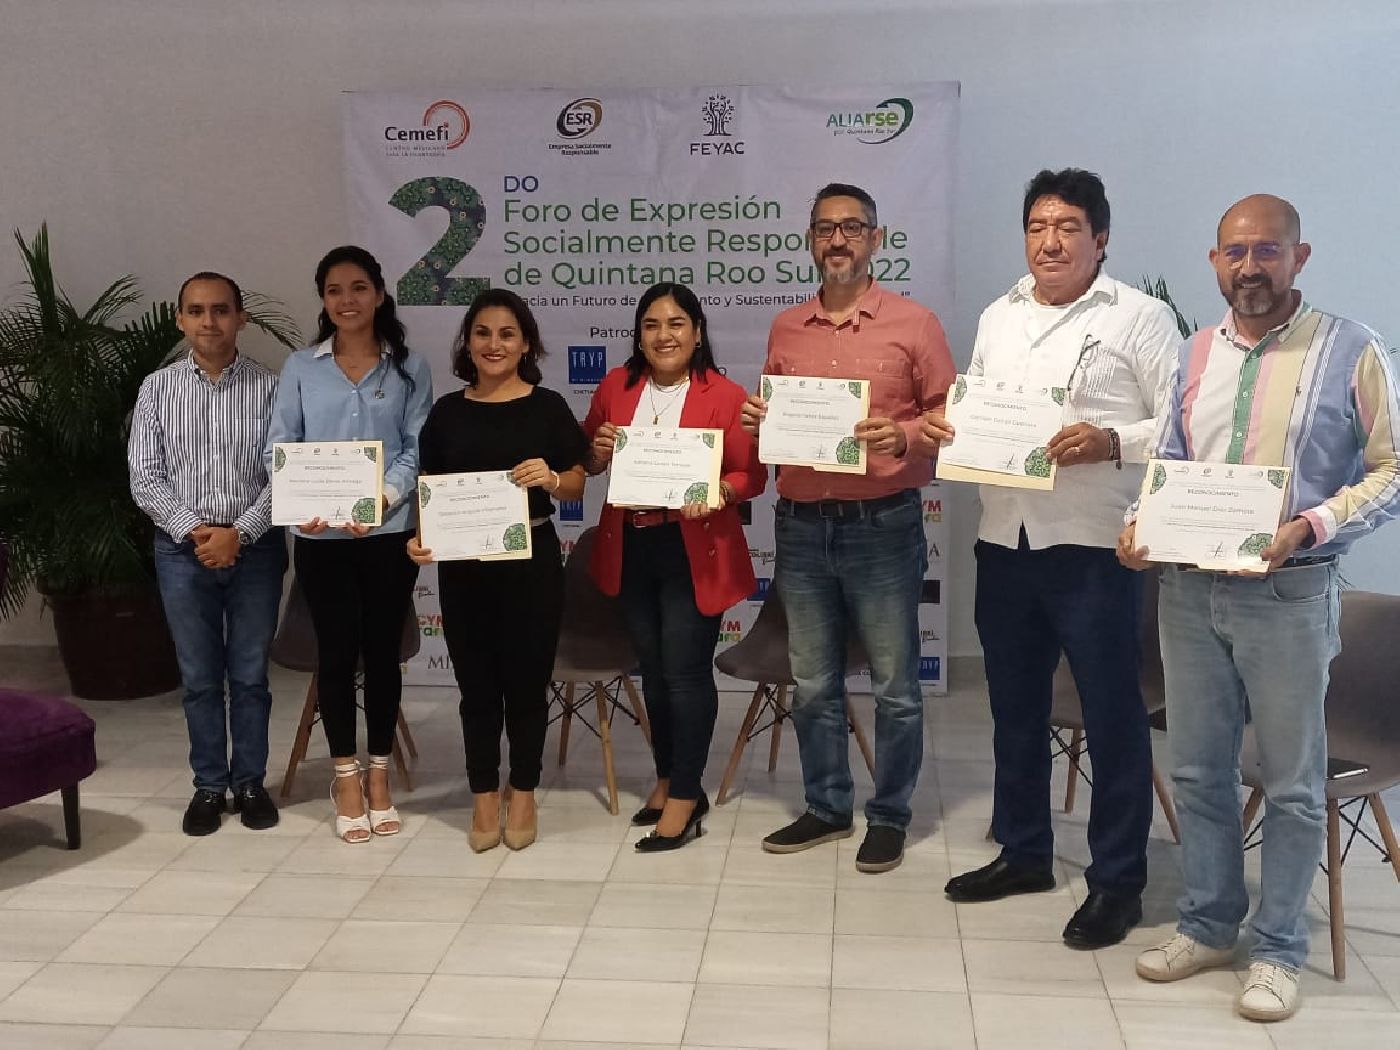 Participa UQROO en 2do Foro de Expresión Socialmente Responsable de Quintana Roo Sur